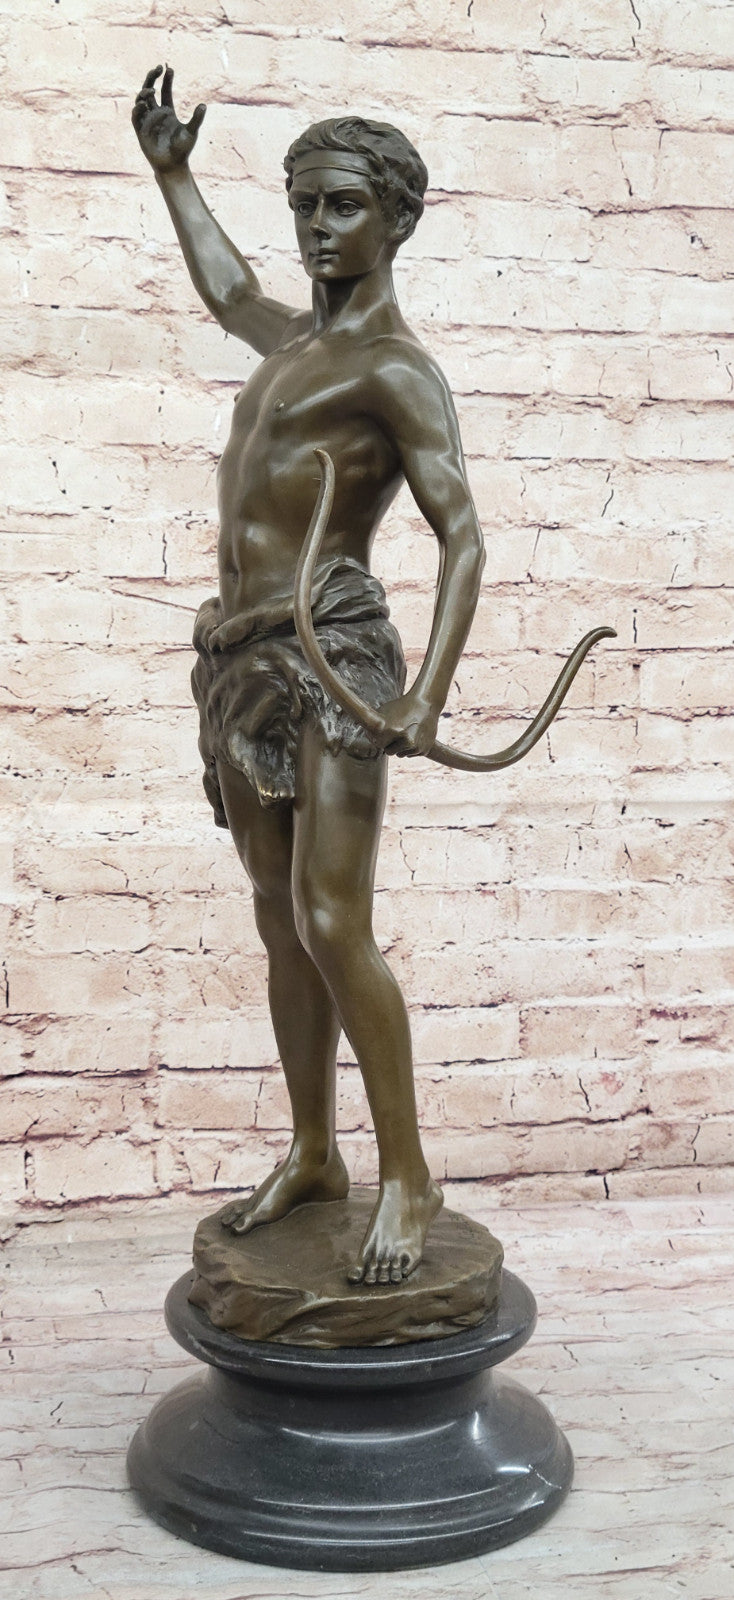 Art Deco Showcase: Signed Kuchler Bronze - Warrior Sculpture Centerpiece